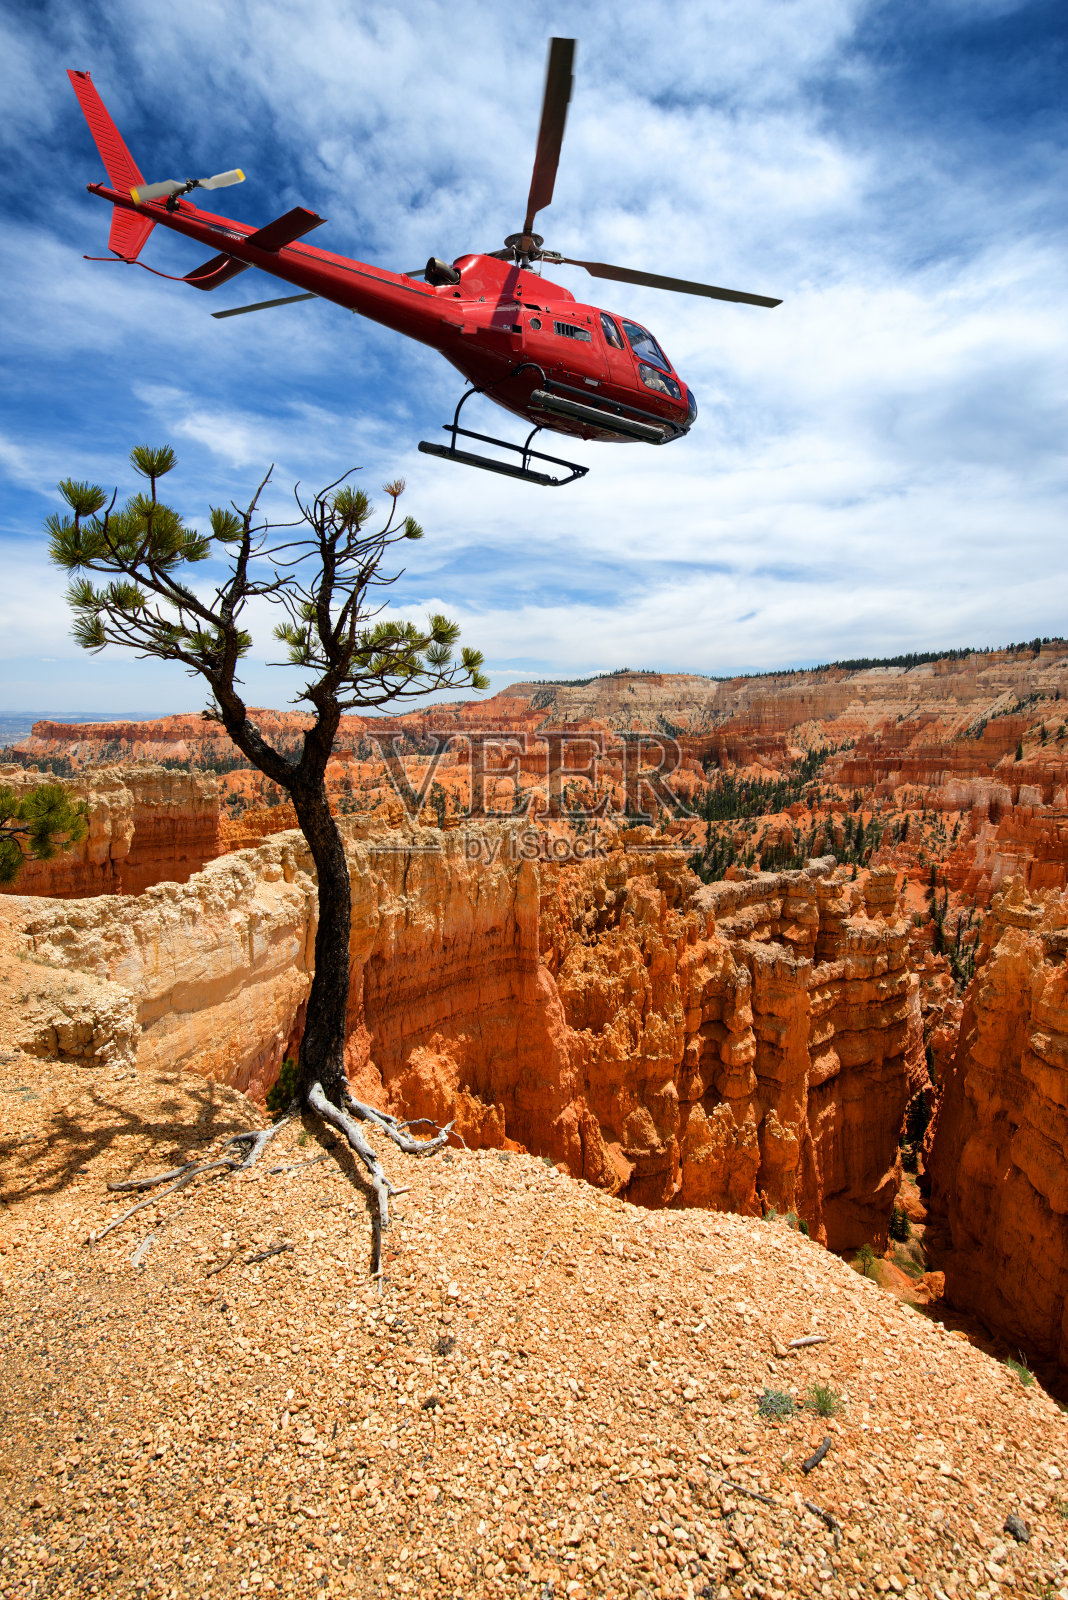 乘坐直升机游览布莱斯峡谷照片摄影图片